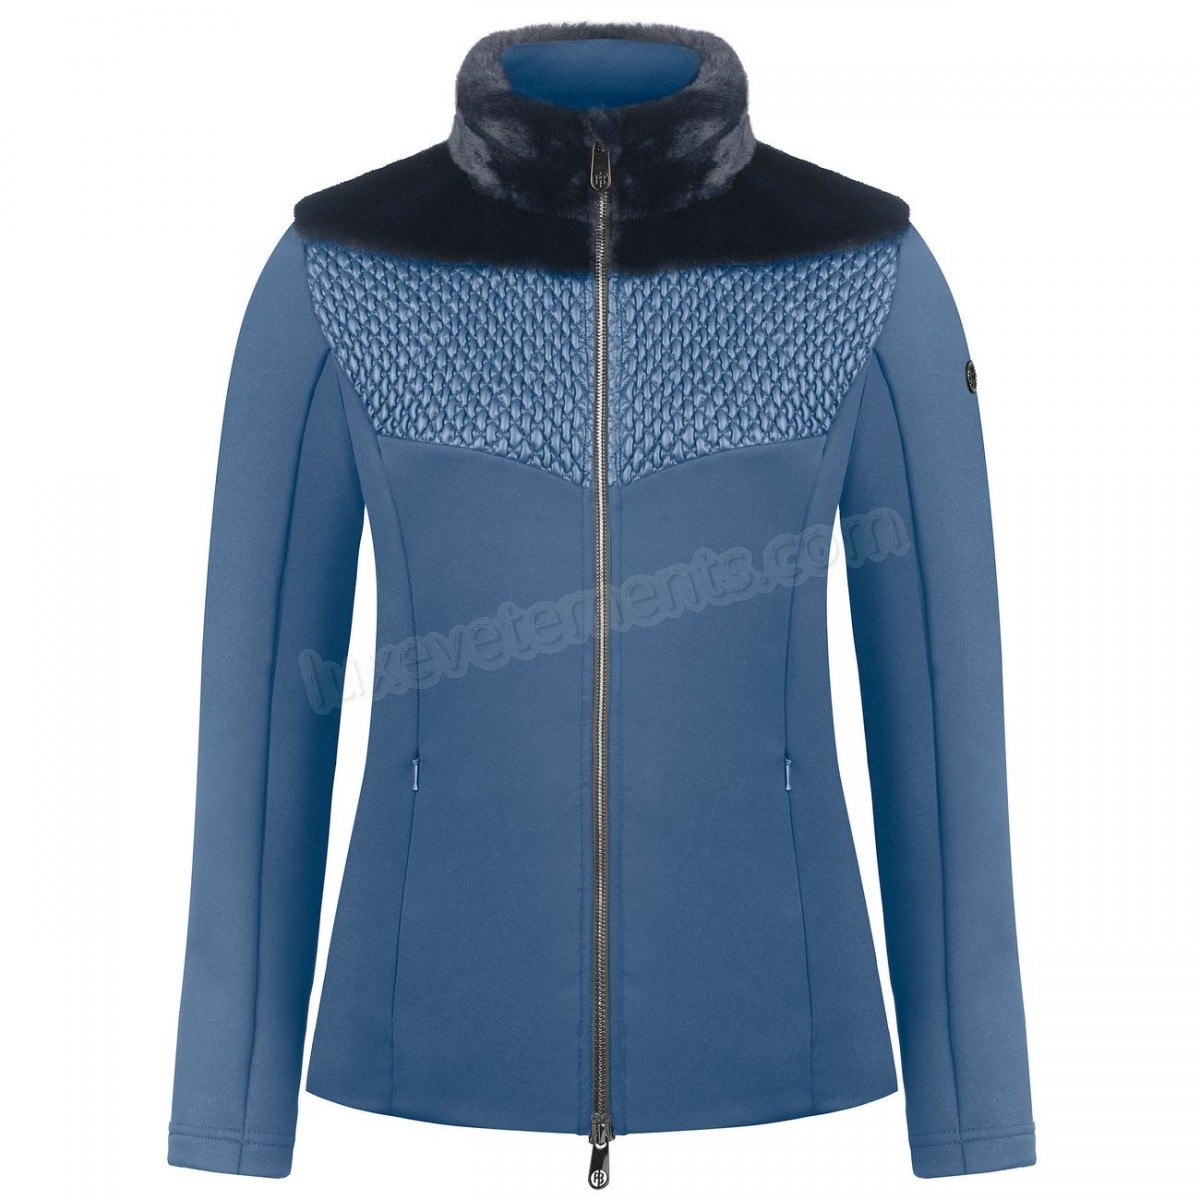 Poivre Blanc-Sports d'hiver femme POIVRE BLANC Veste En Polaire Poivre Blanc Hybrid Stretch Fleece Jacket 1600 Multico Blue Femme Vente en ligne - -2